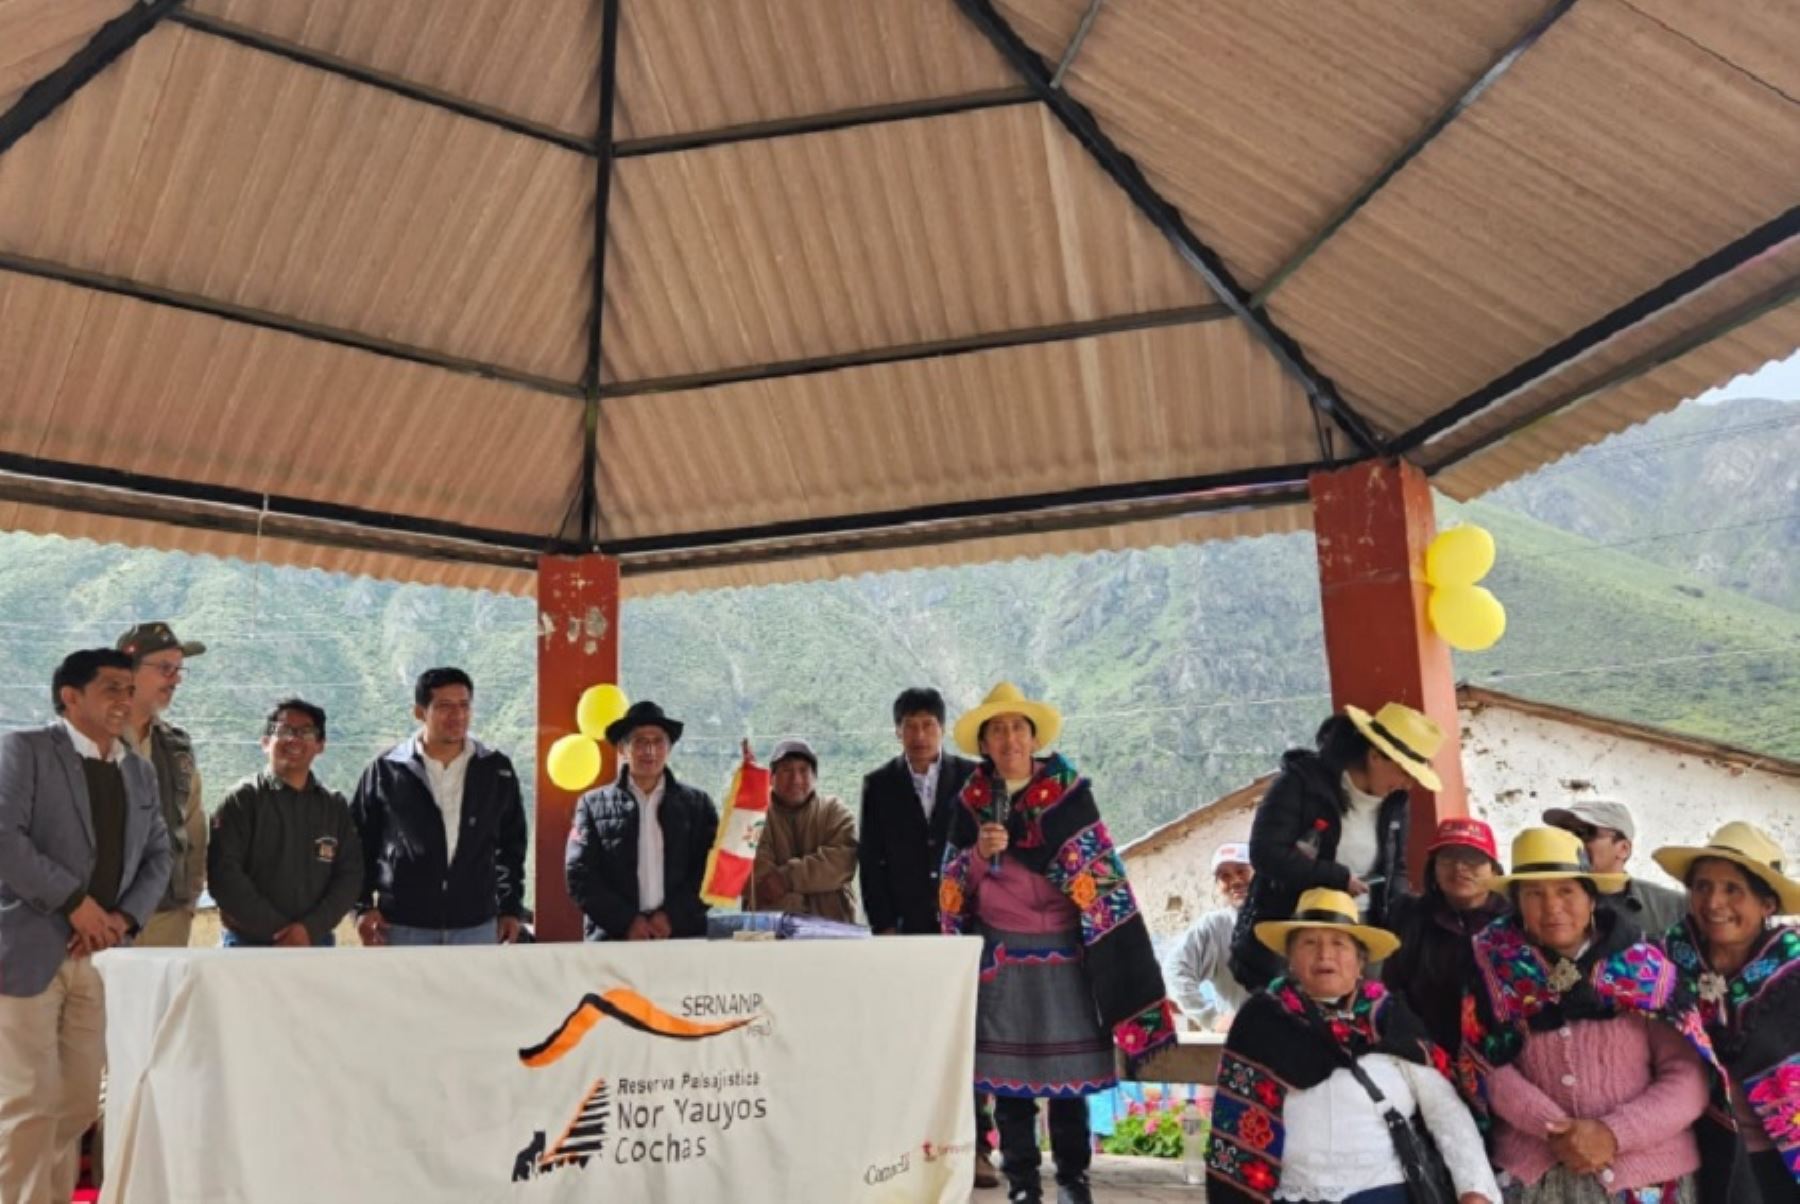 Una gran fiesta de la conservación se vivió en el distrito de Carania, en la provincia limeña de Yauyos, como antesala a la celebración por el 22 aniversario de la Reserva Paisajística Nor Yauyos Cochas, una de las áreas naturales protegidas más emblemáticas de las regiones de Lima y Junín.